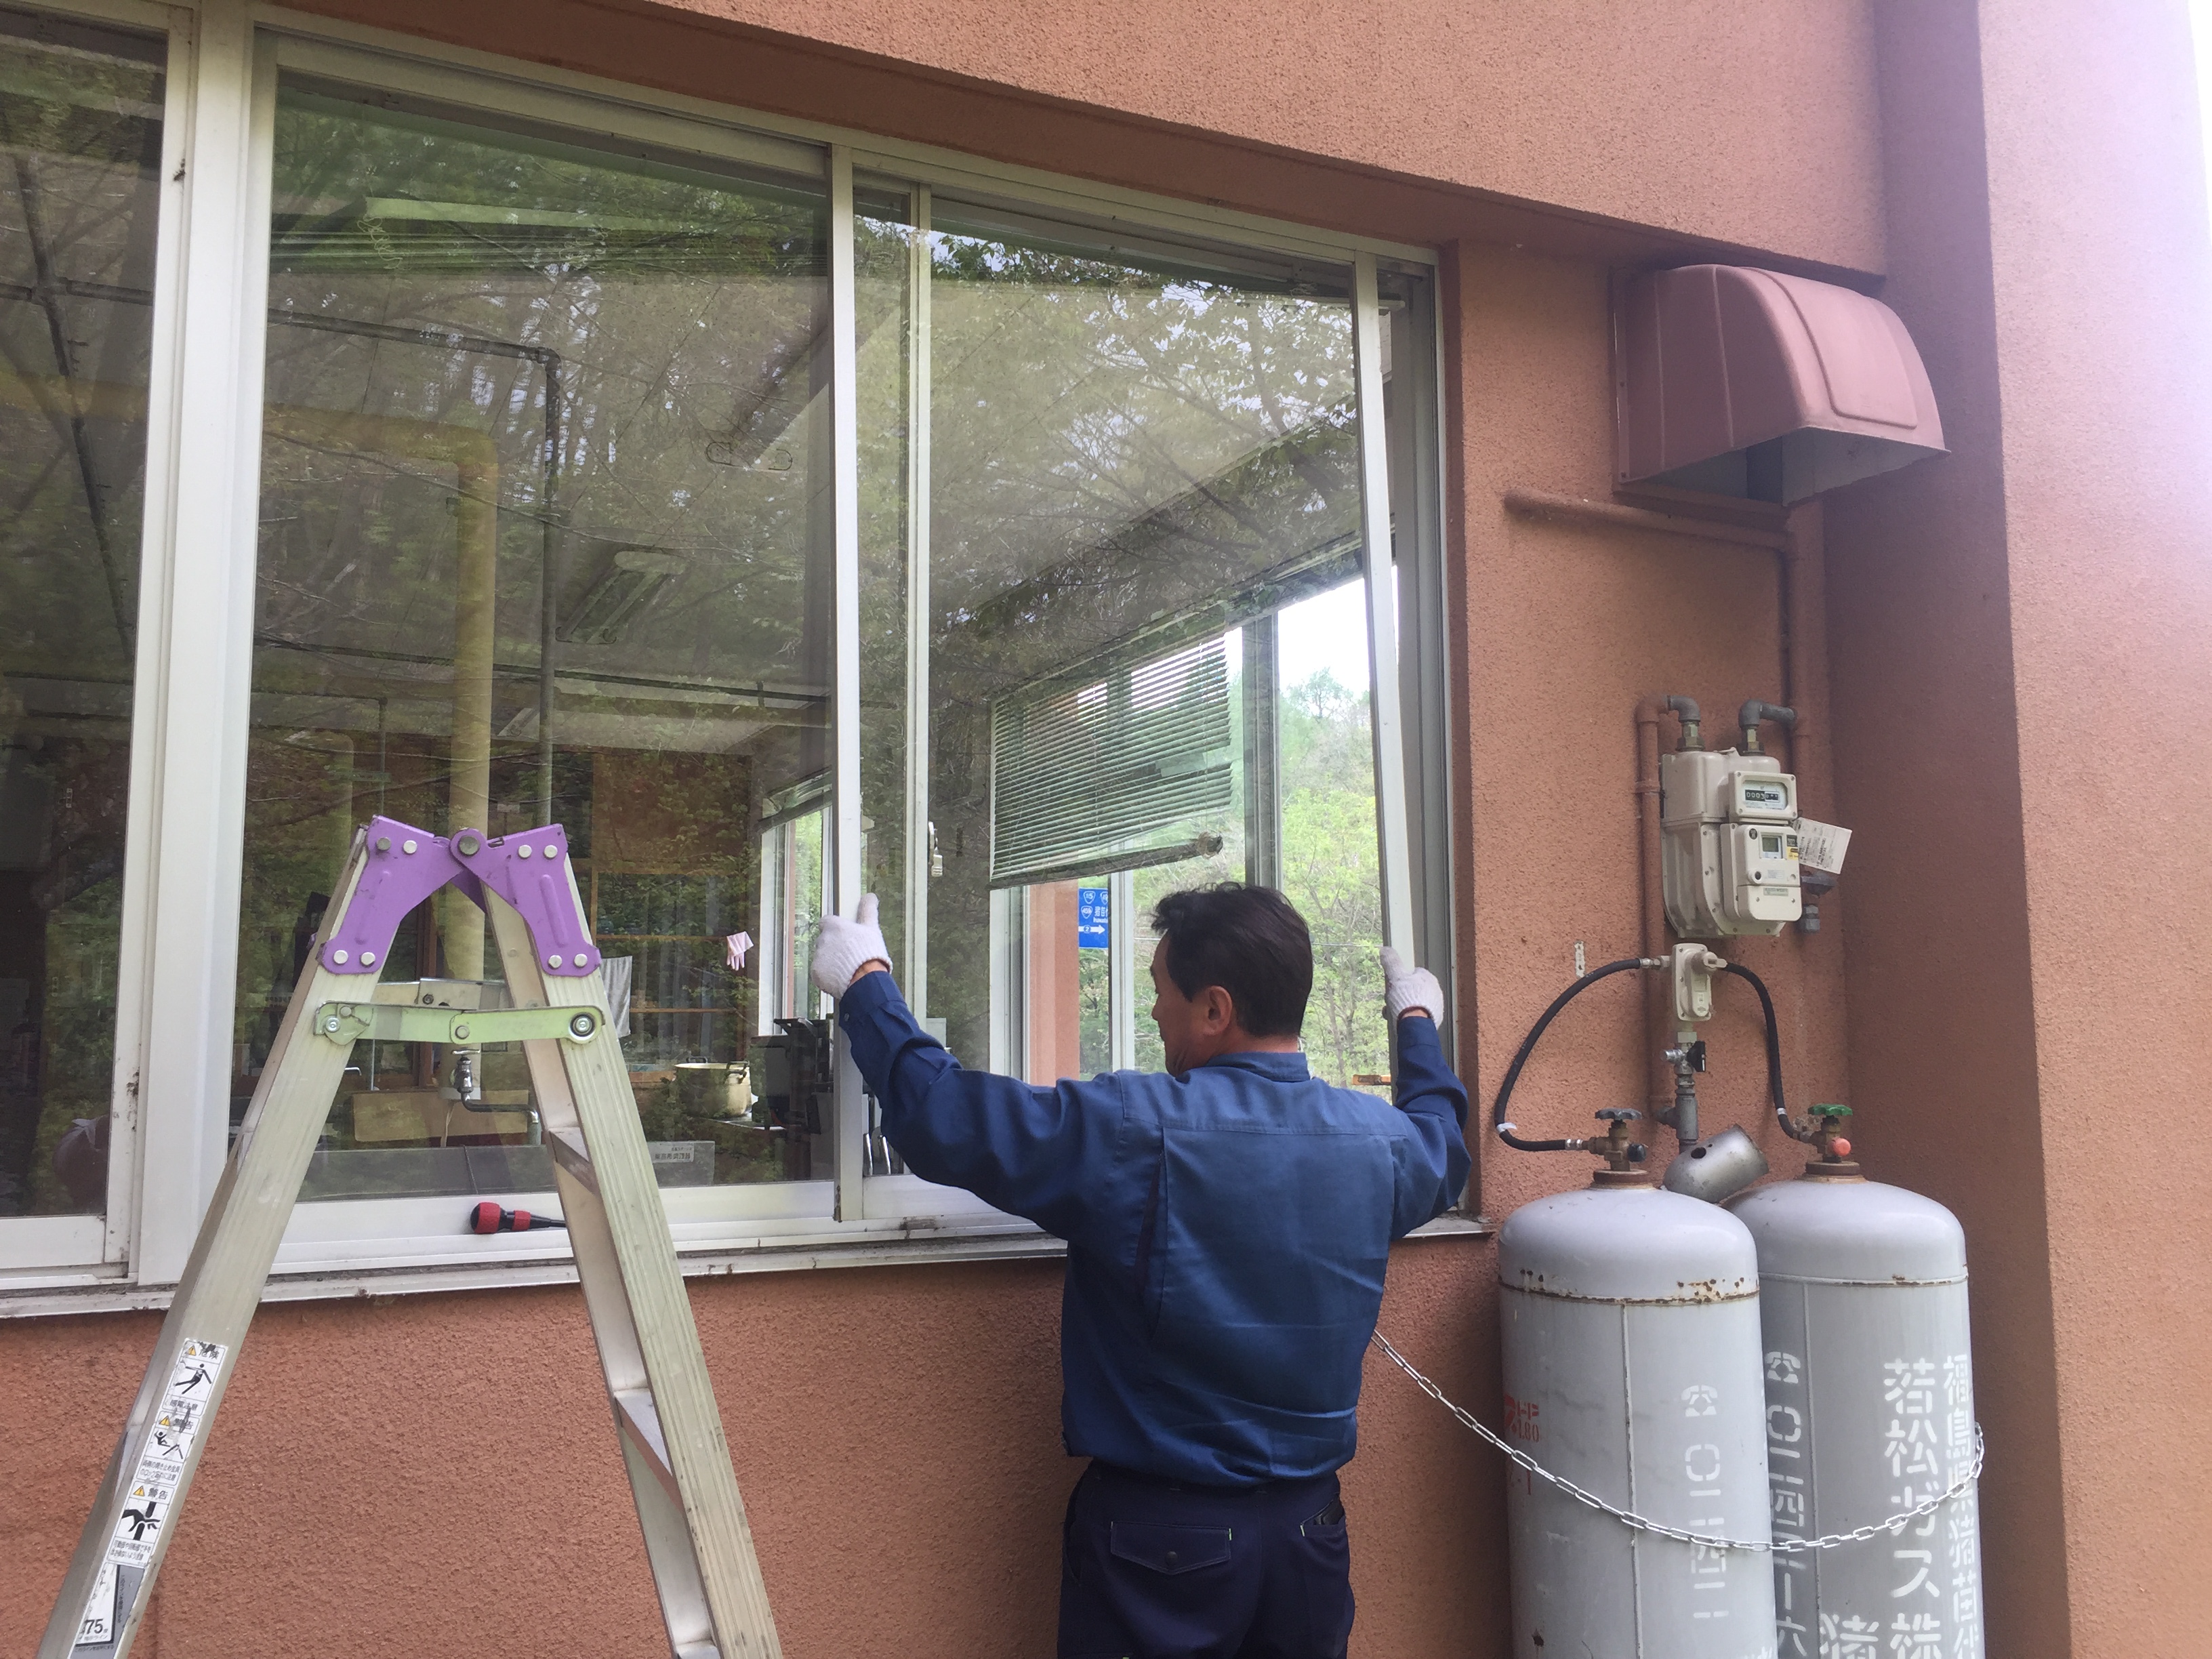 福島県耶麻郡北塩原村の施設で強風によって割れた窓ガラスを修理した窓リフォーム事例